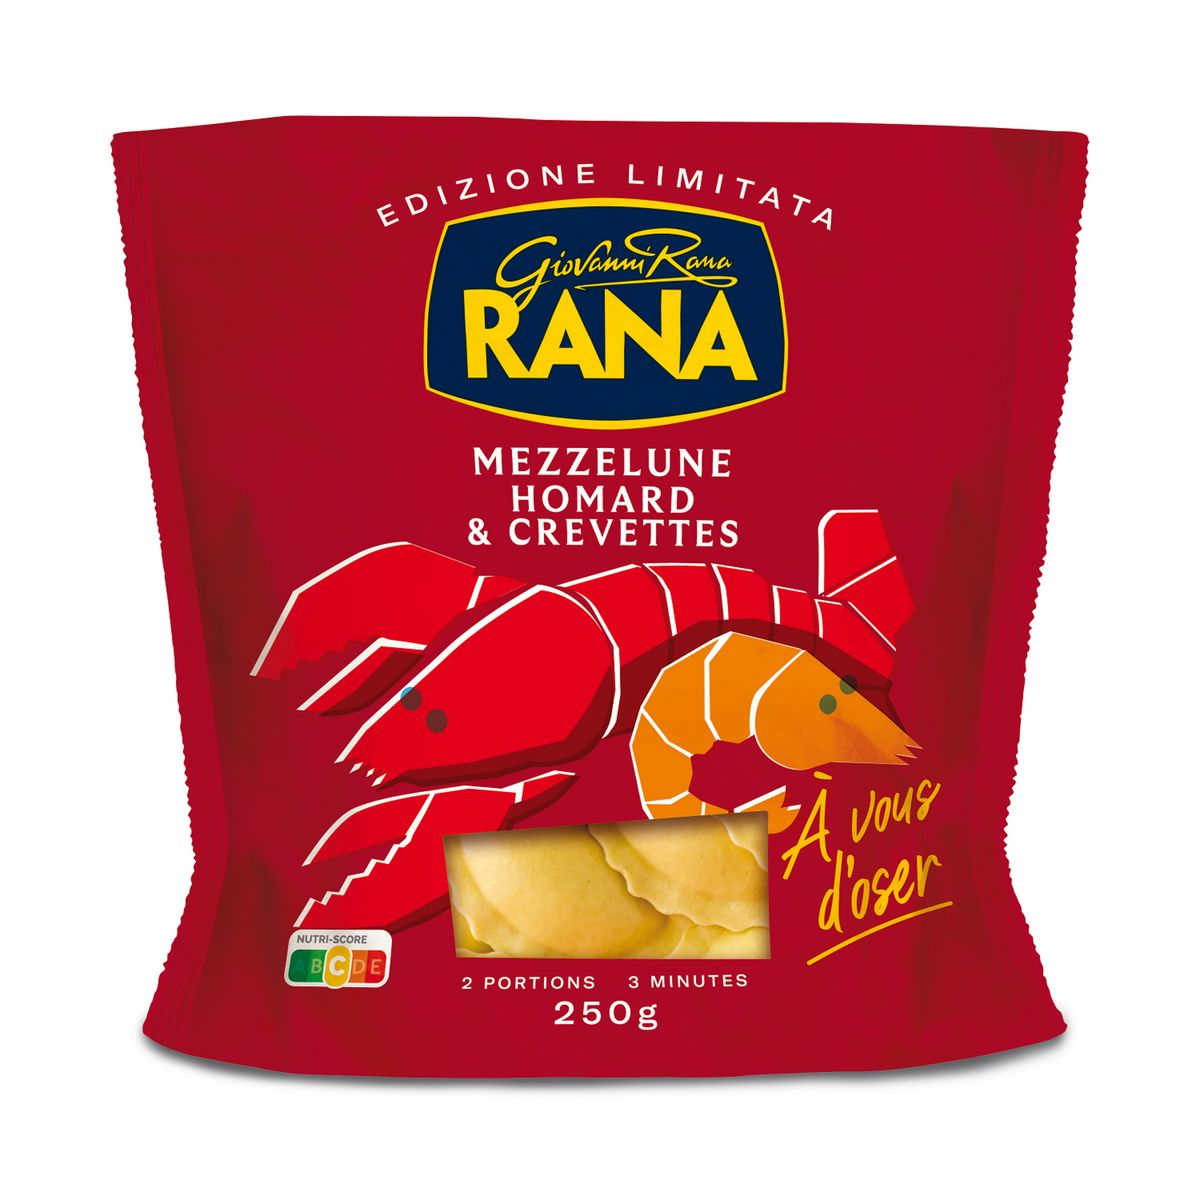 RANA Mezzelune crevettes, burrata & zeste de Citron - Limone di Sorrento IGP 2 portions 250g